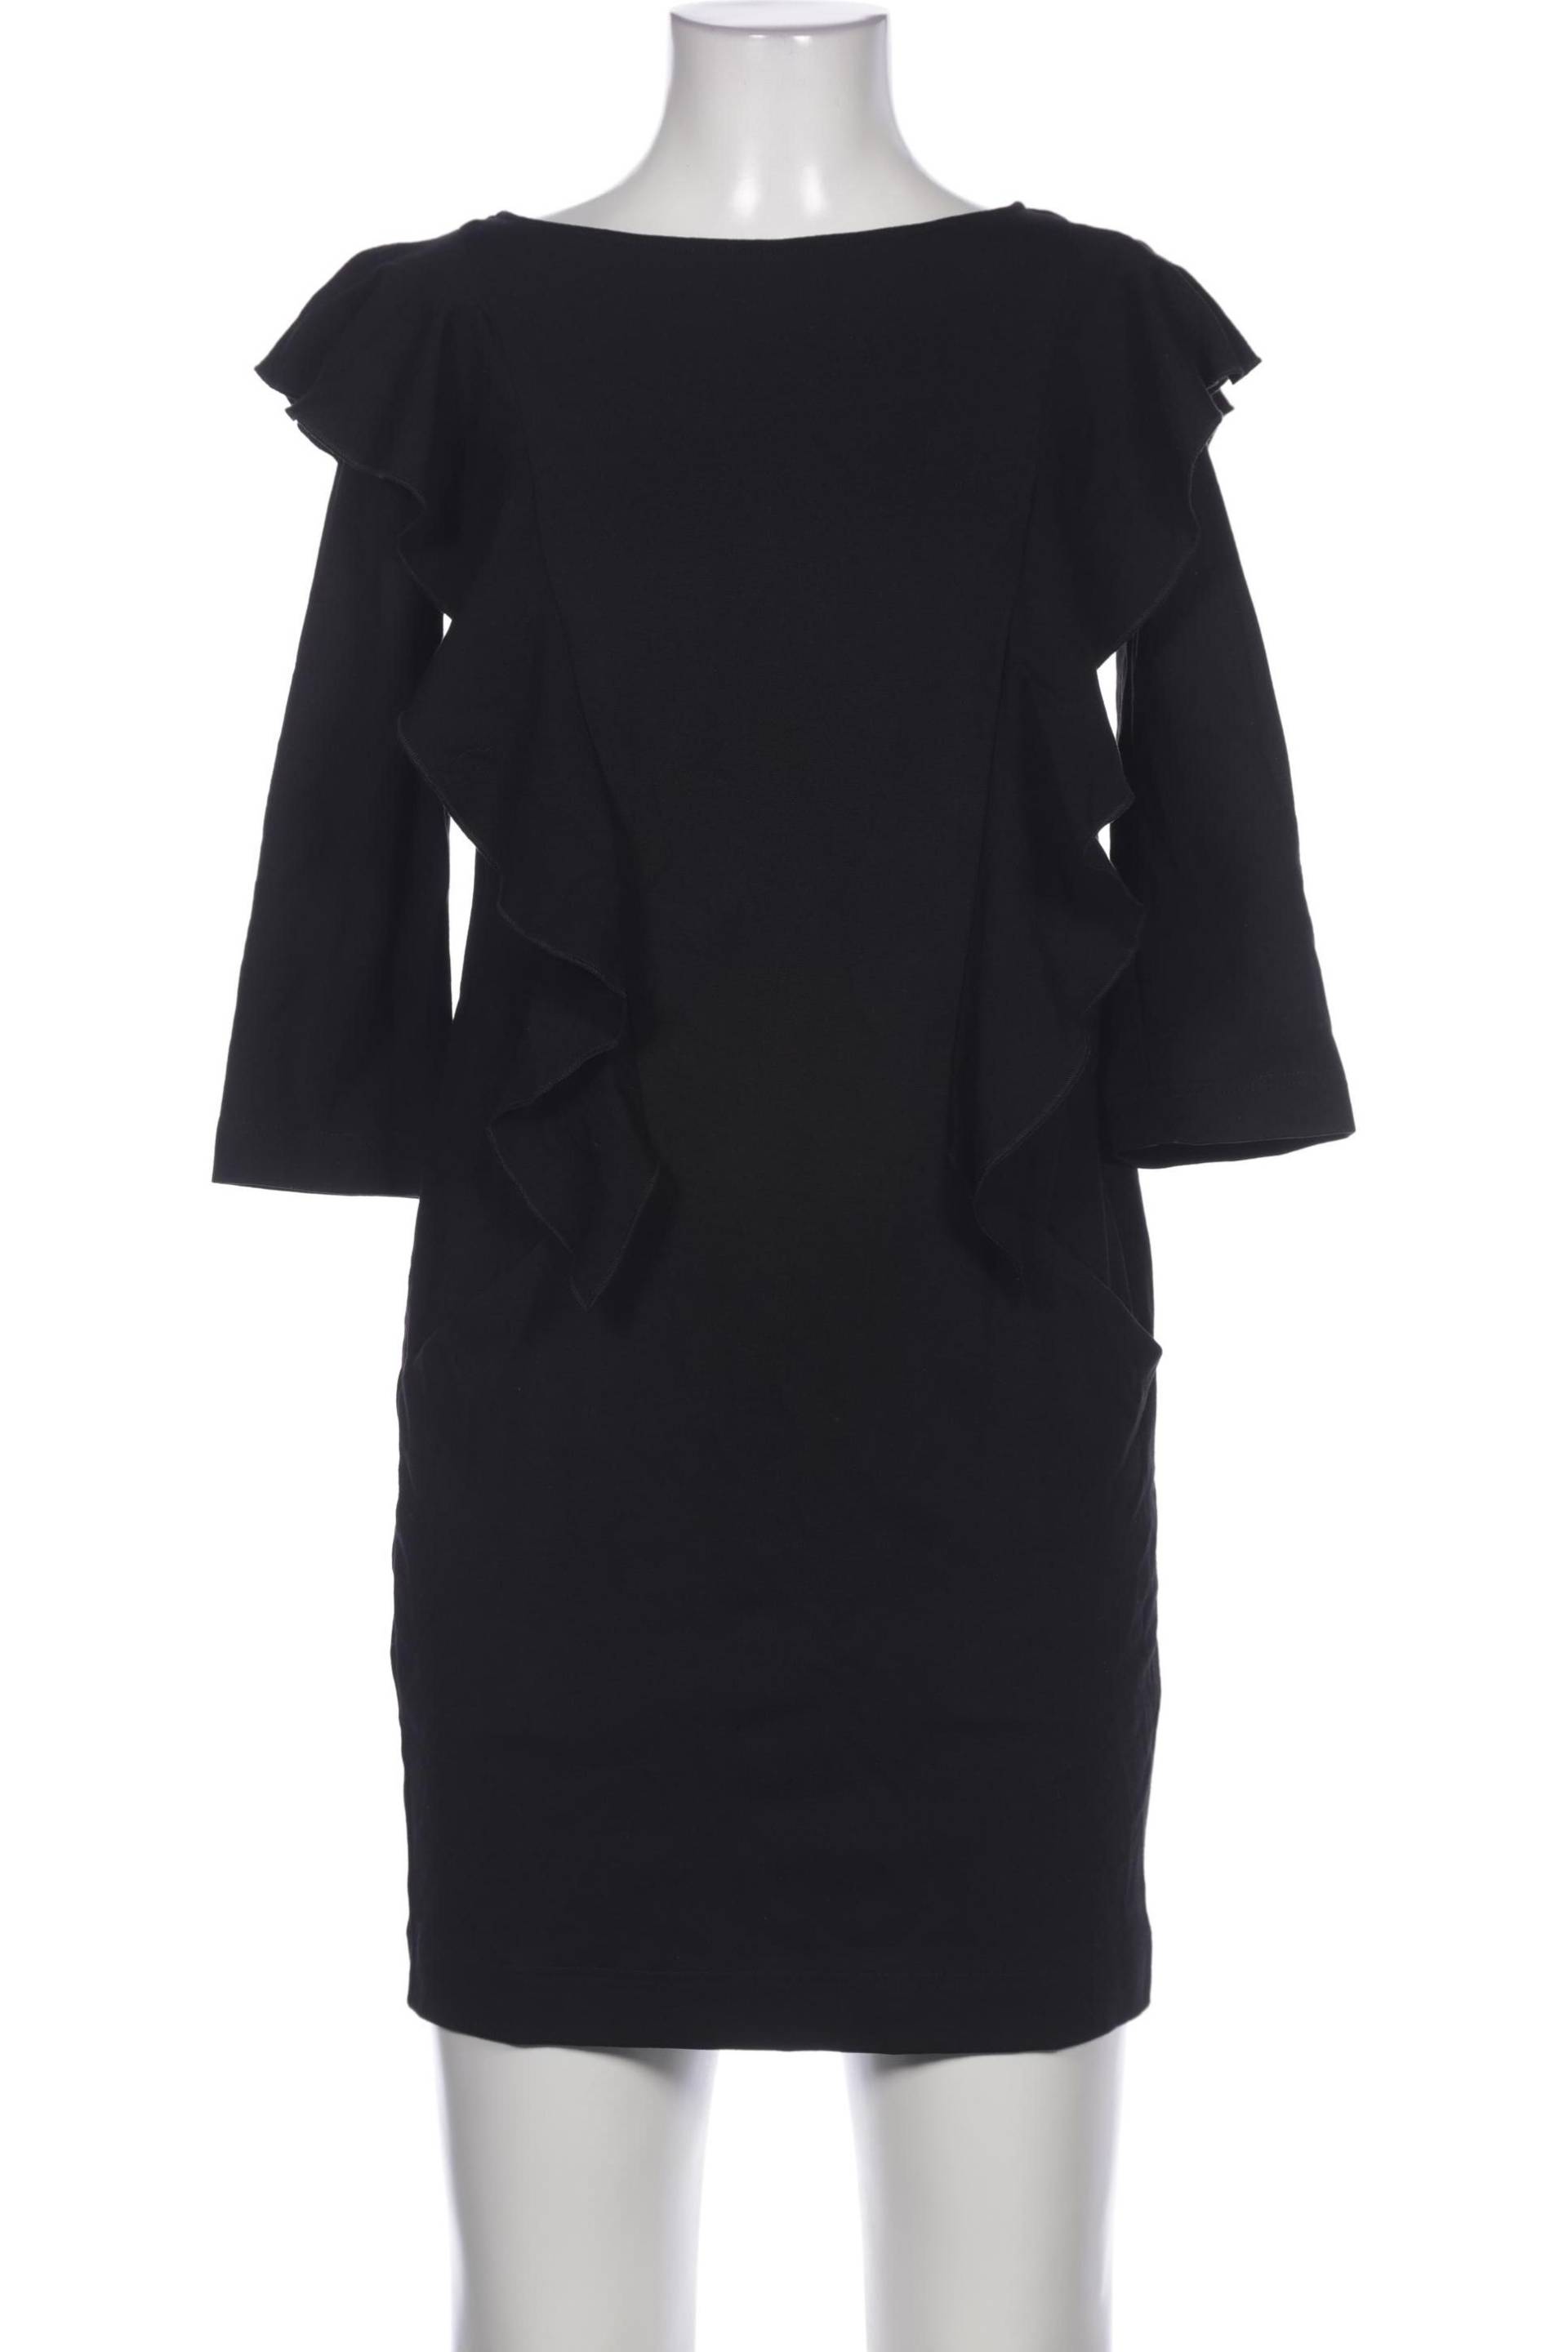 Ana Alcazar Damen Kleid, schwarz, Gr. 34 von Ana Alcazar